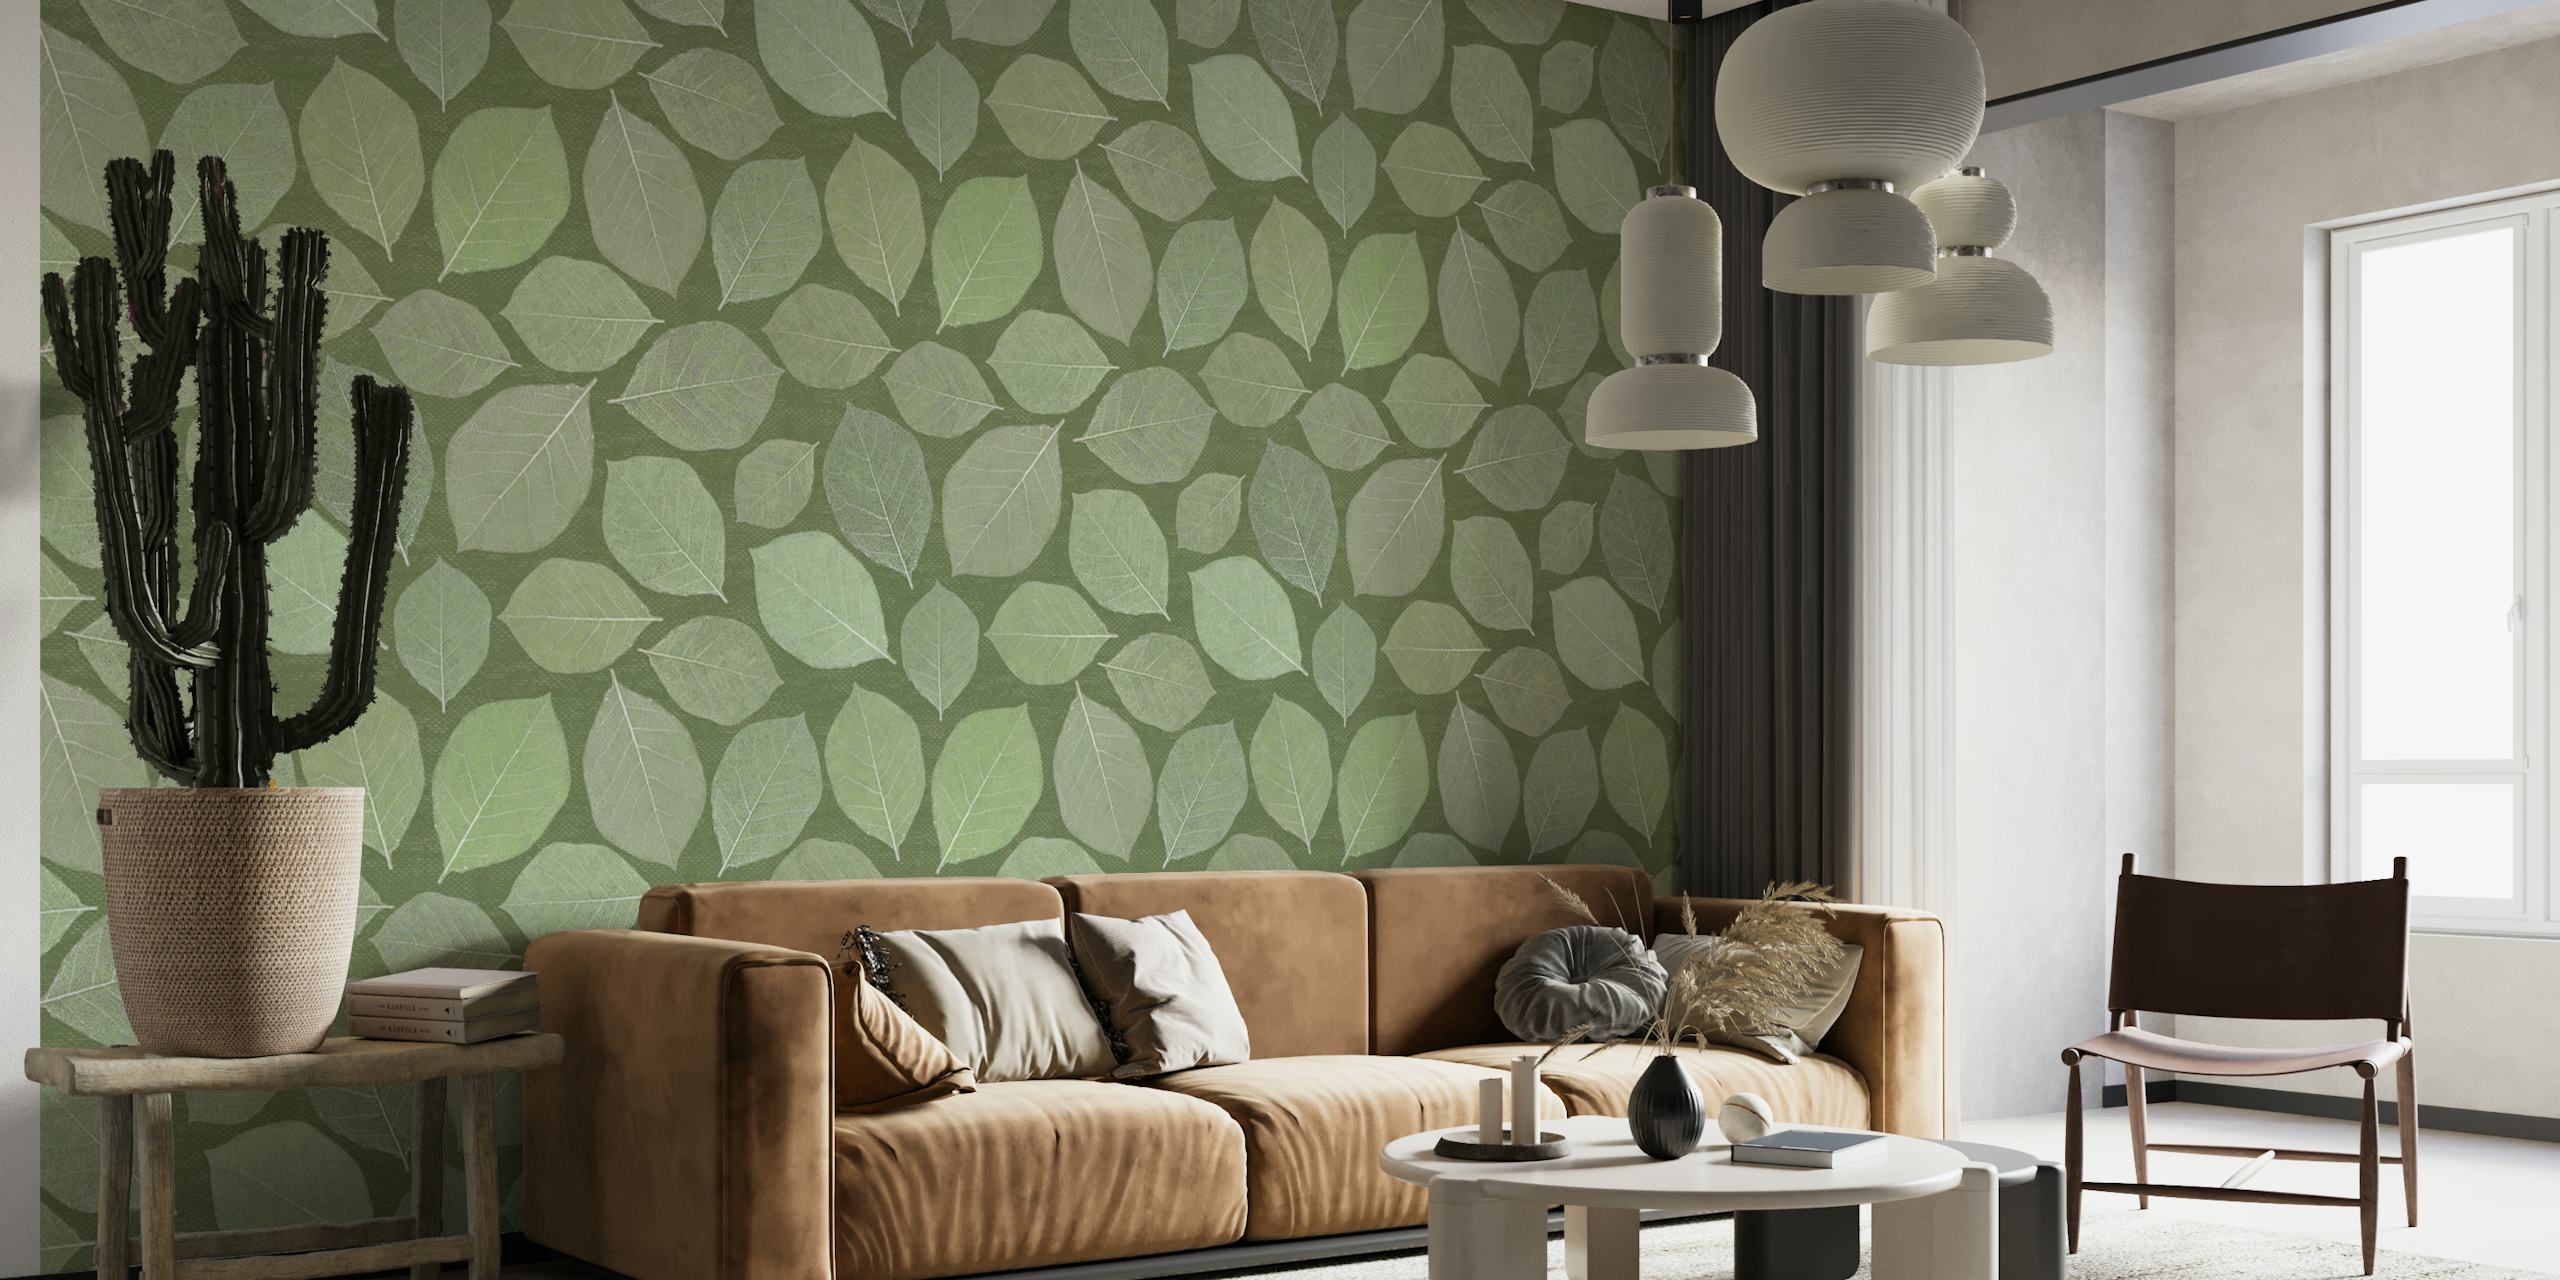 Wandbild mit Magnolienblättern in verschiedenen Grüntönen, perfekt für eine ruhige Inneneinrichtung